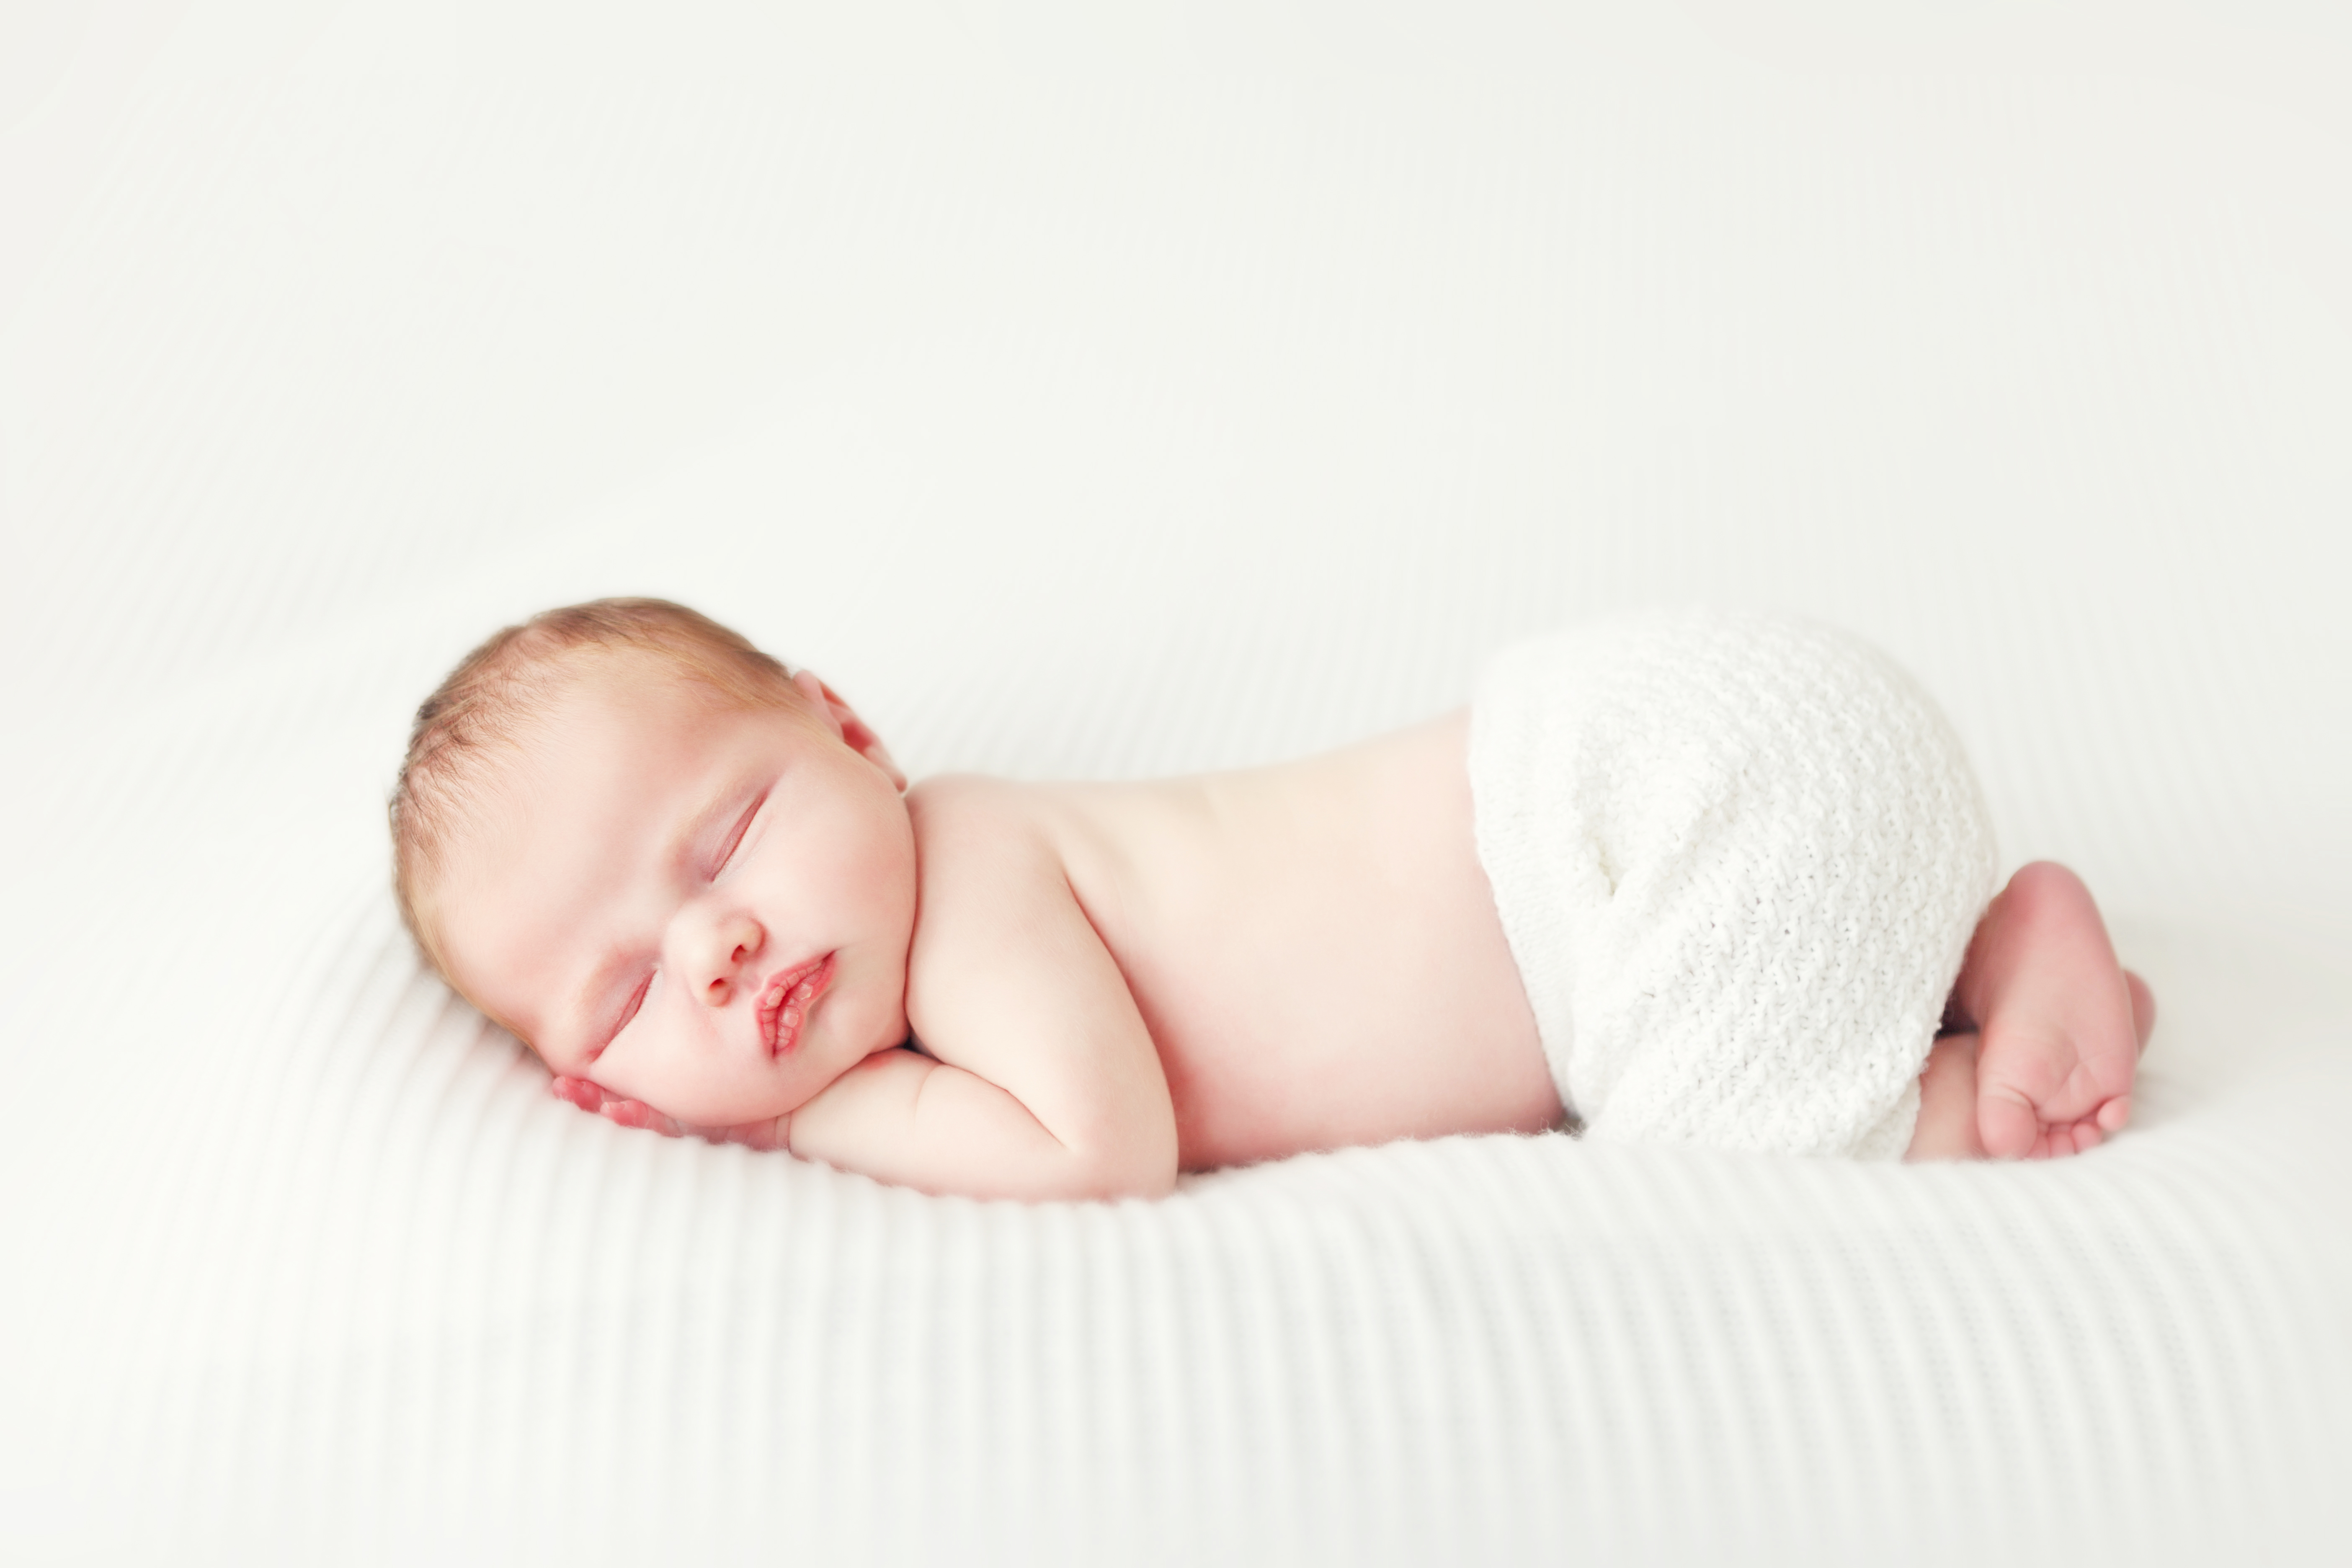 Essential Tips pro Newborn Cura: A Pascendi ad Diapering et Eligendi Ius Diapers